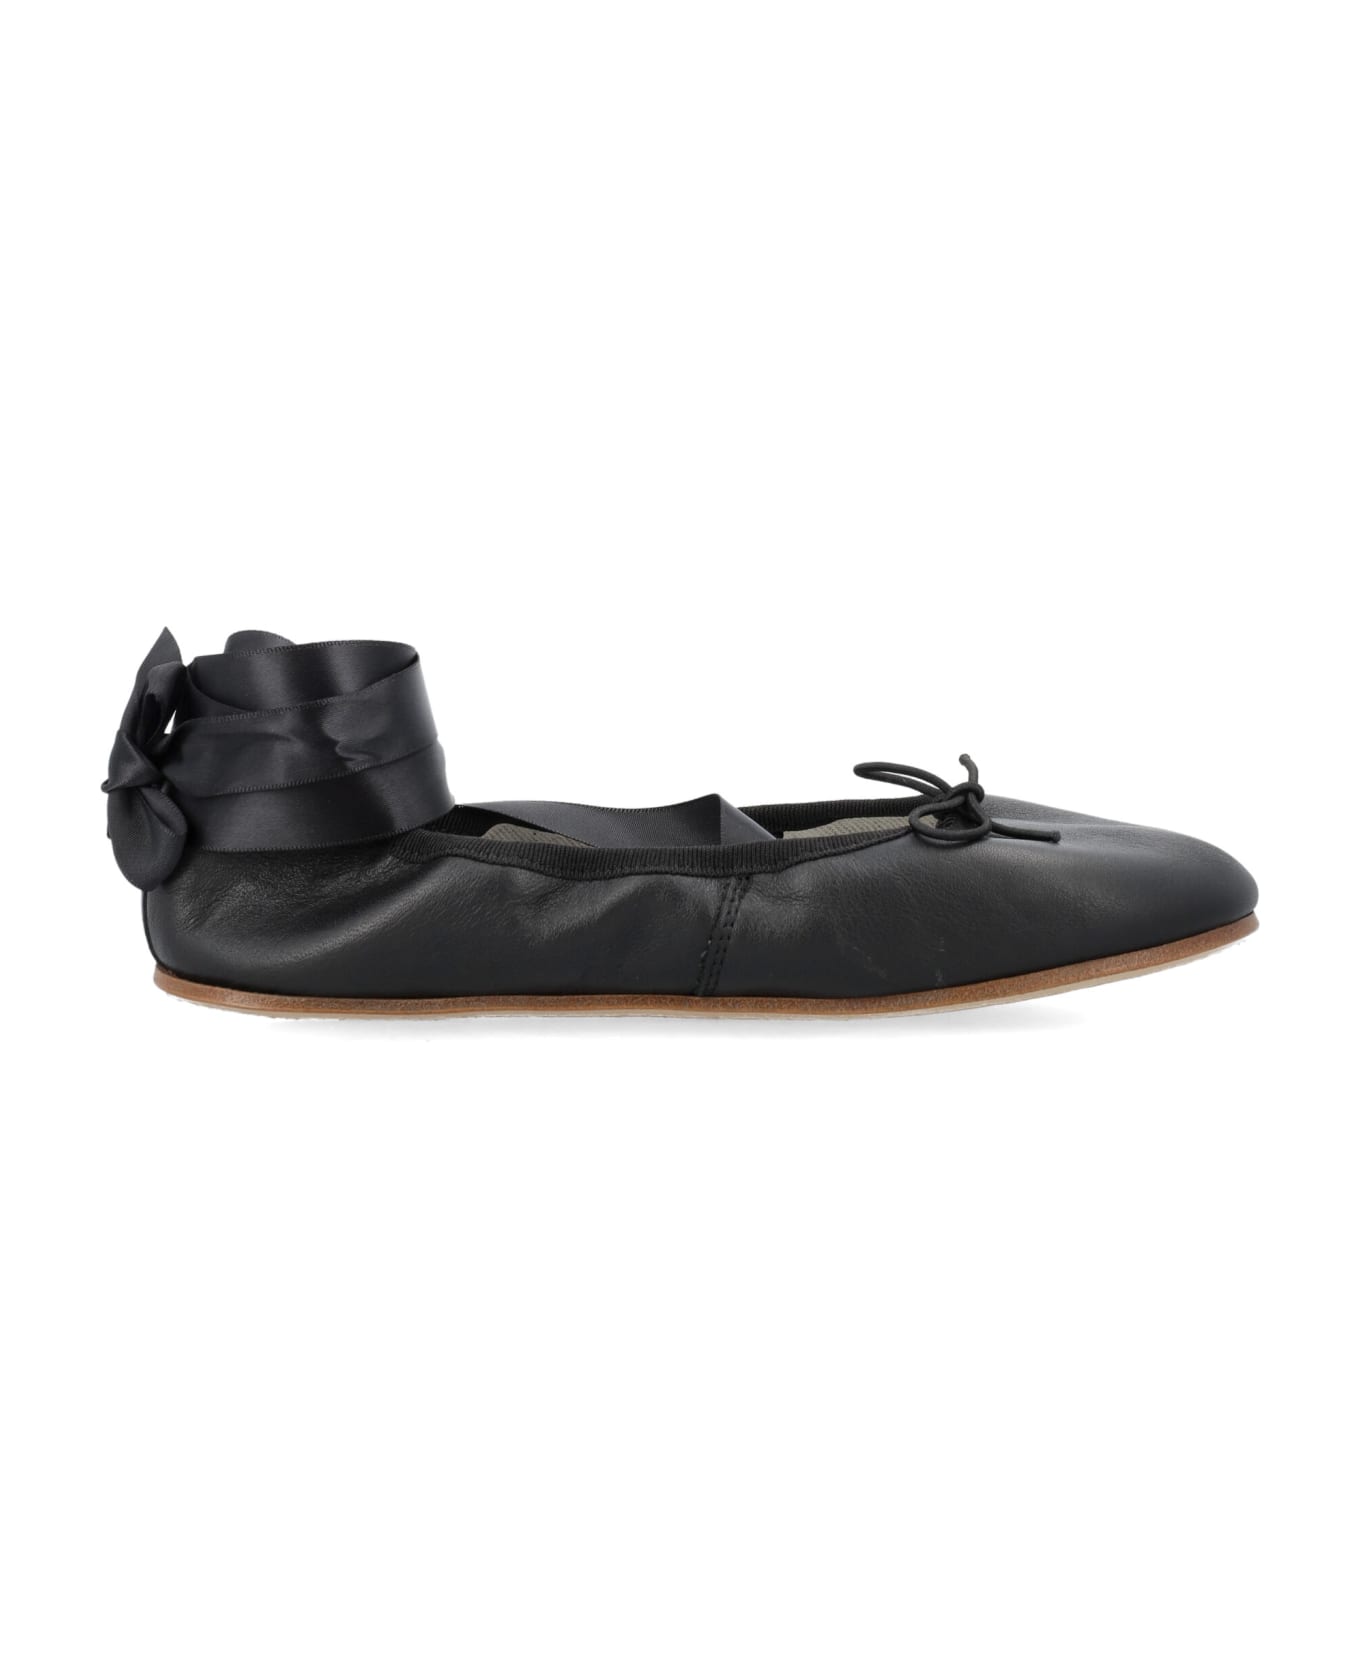 Repetto Sophia Ballerina Shoes - Noir